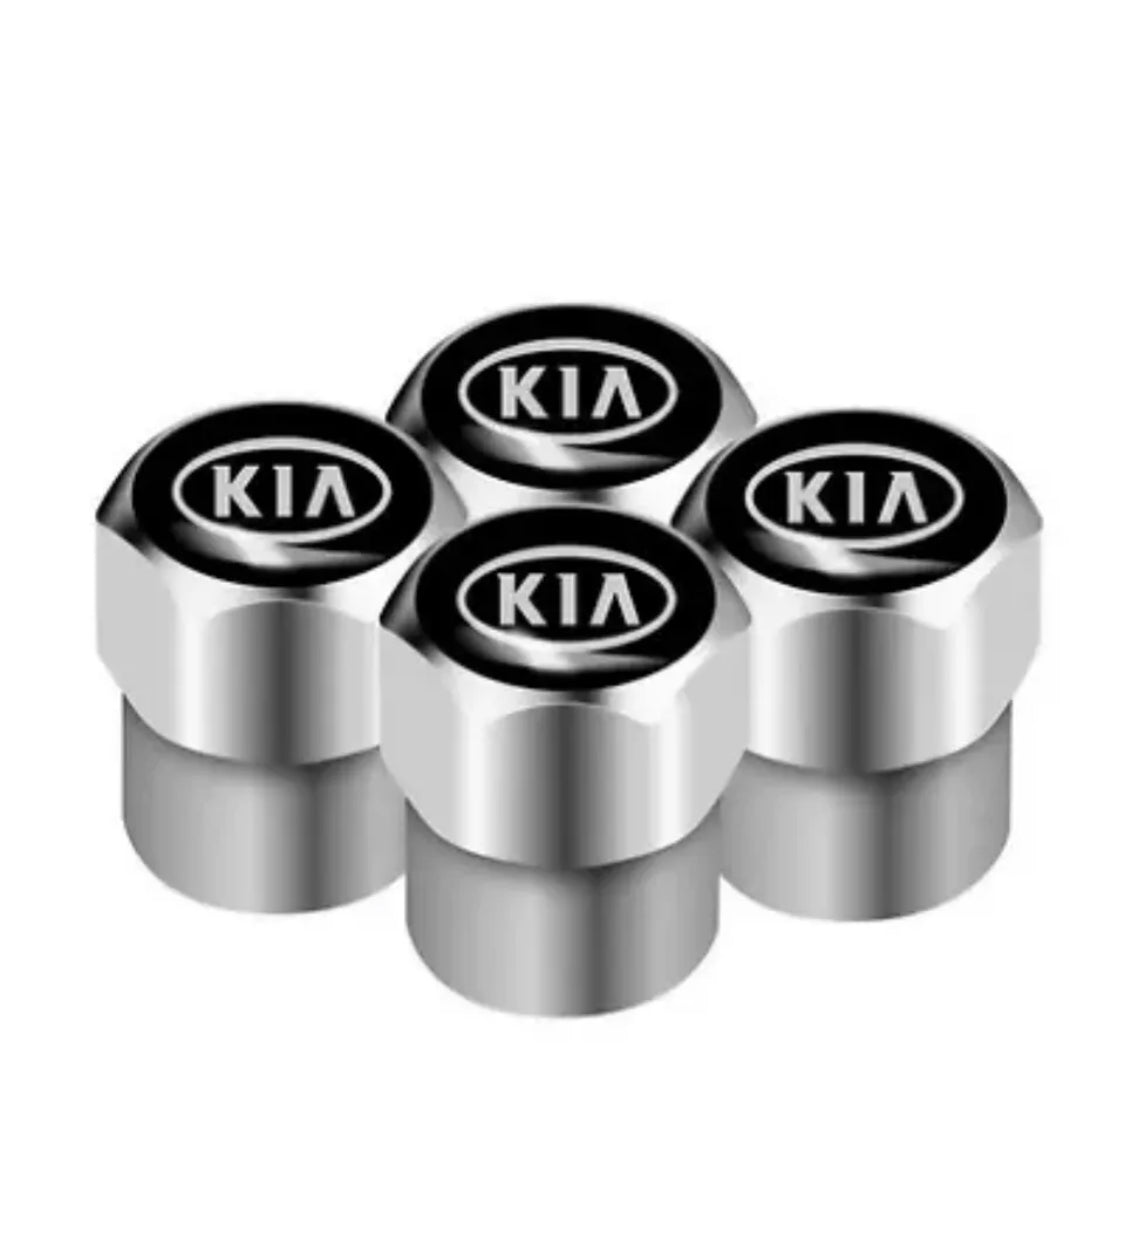 Kia Valve Caps - Silver